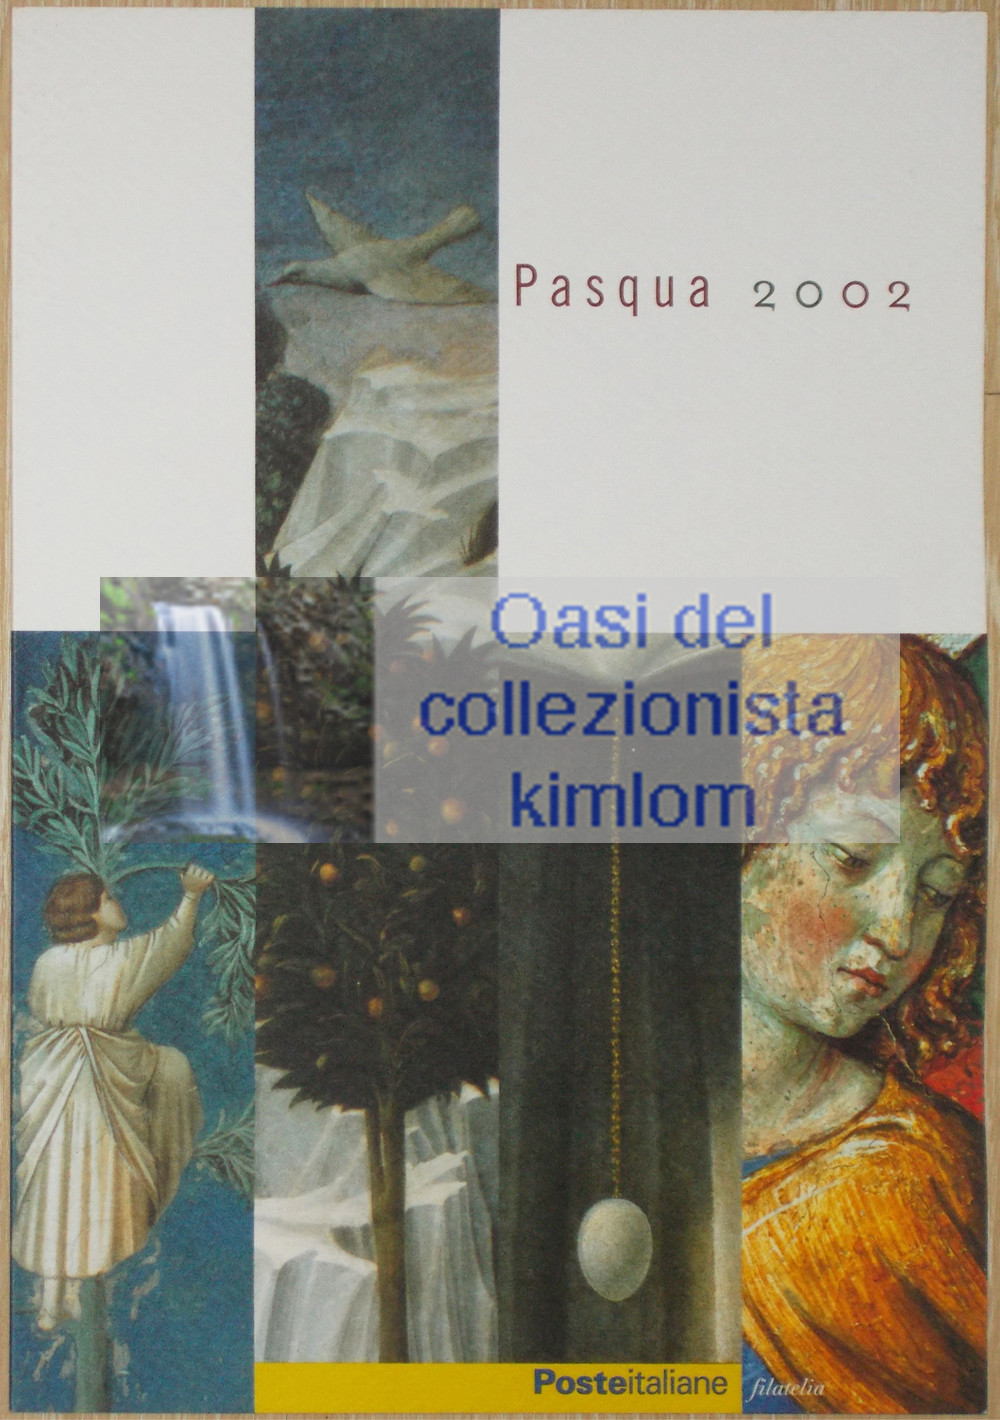 folder - Pasqua 2002